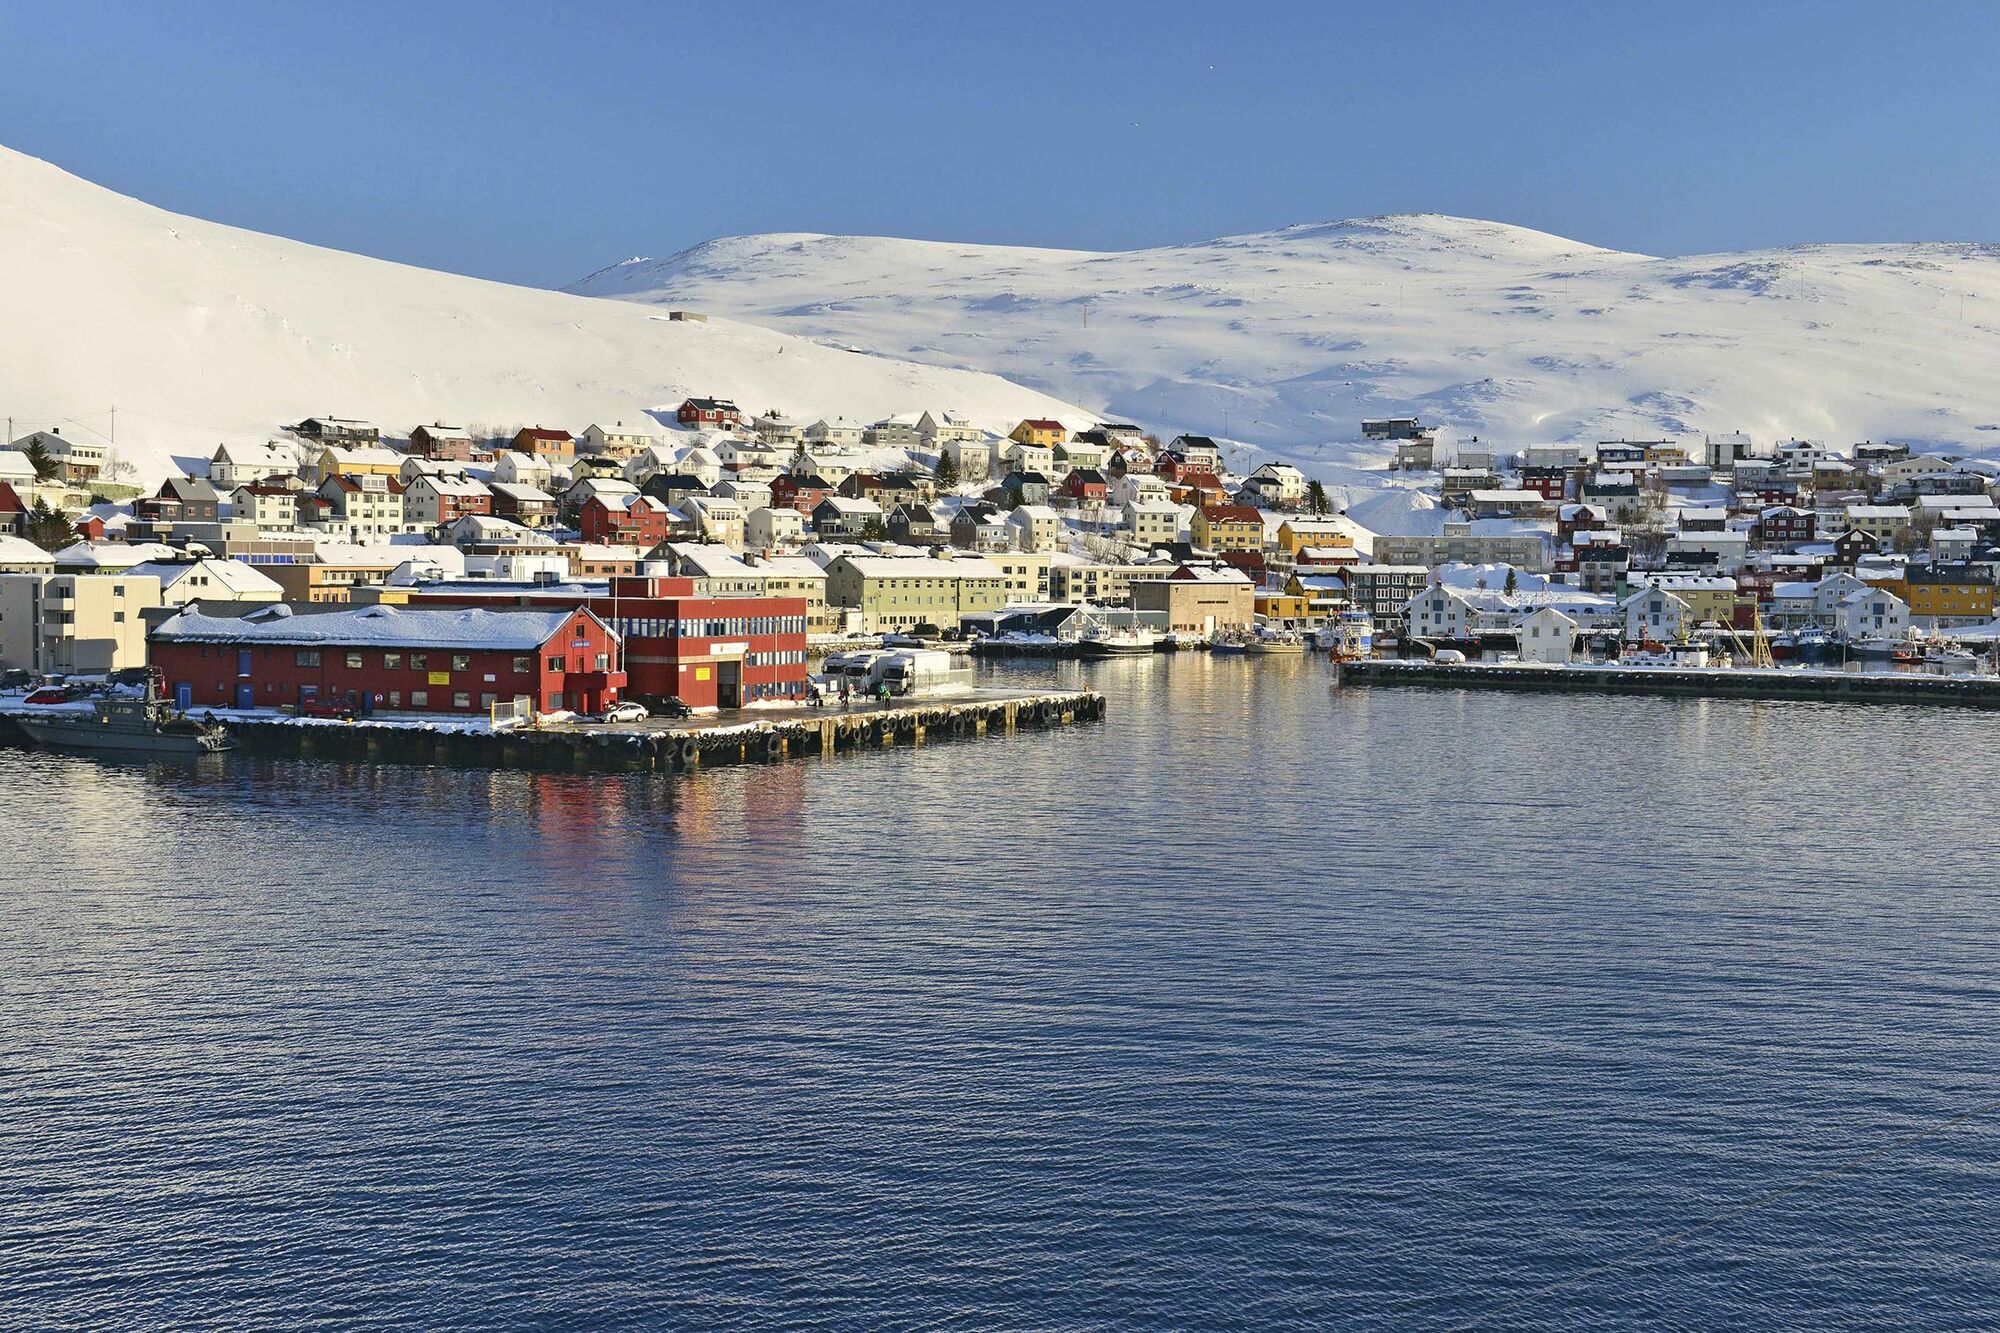 Das Foto zeigt die kleine Stadt Honningsvåg im Norden Norwegens vom Wasser aus gesehen. Hinter der Stadt sind schneebedeckte Berge zu sehen.